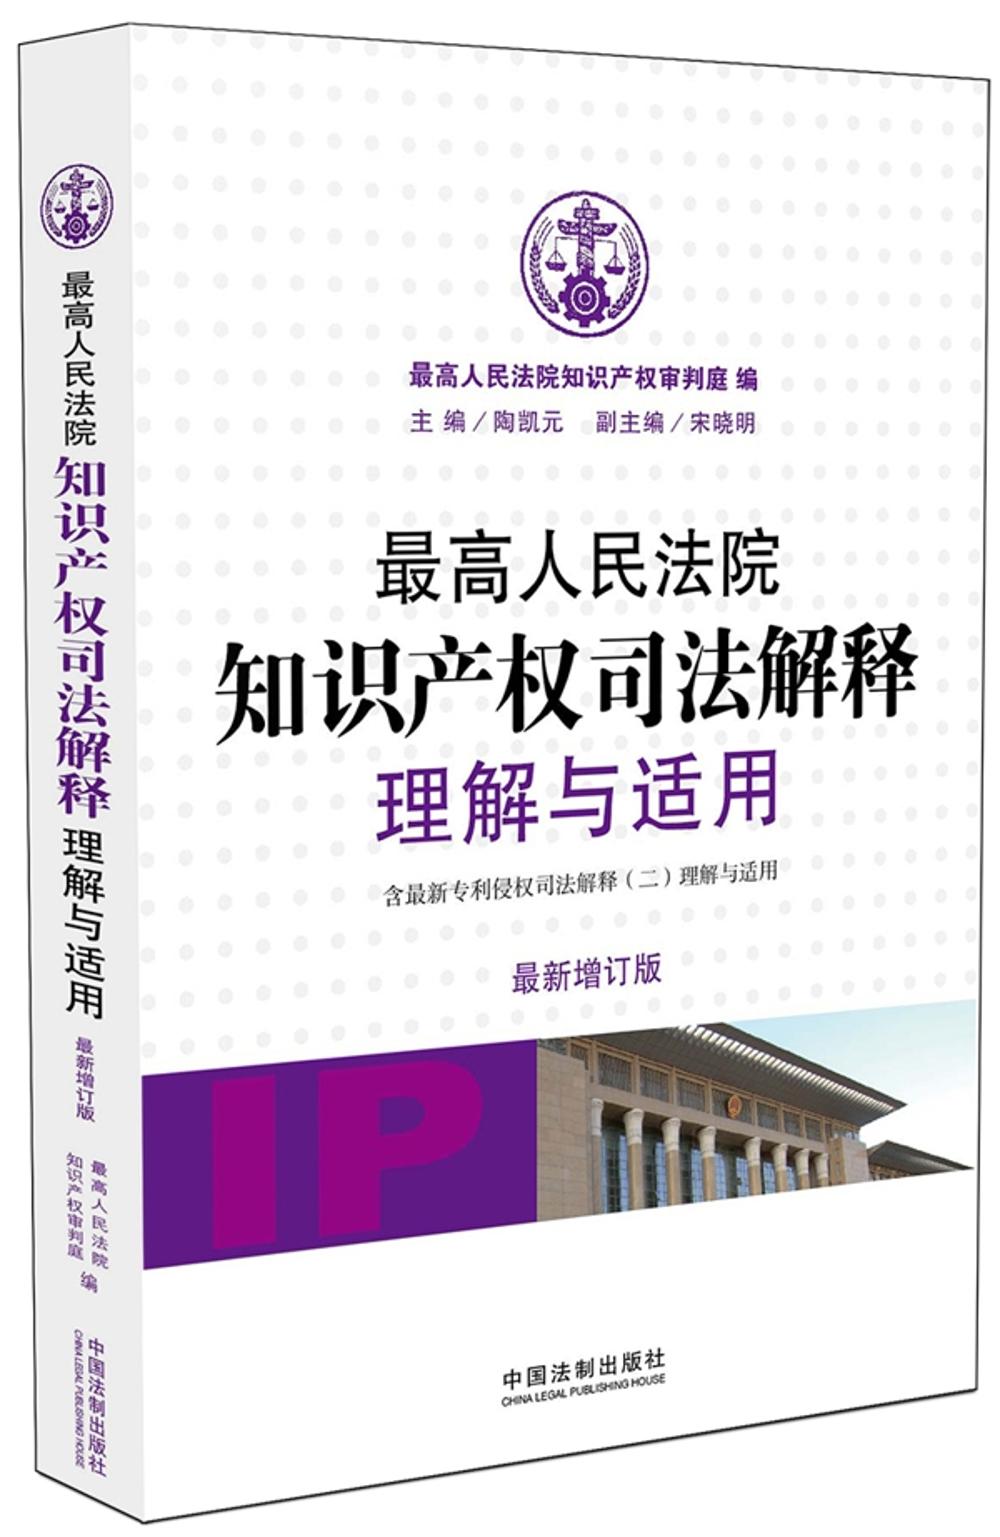 最高人民法院知识产权司法解释理解与适用（最新增订版） pdf格式下载